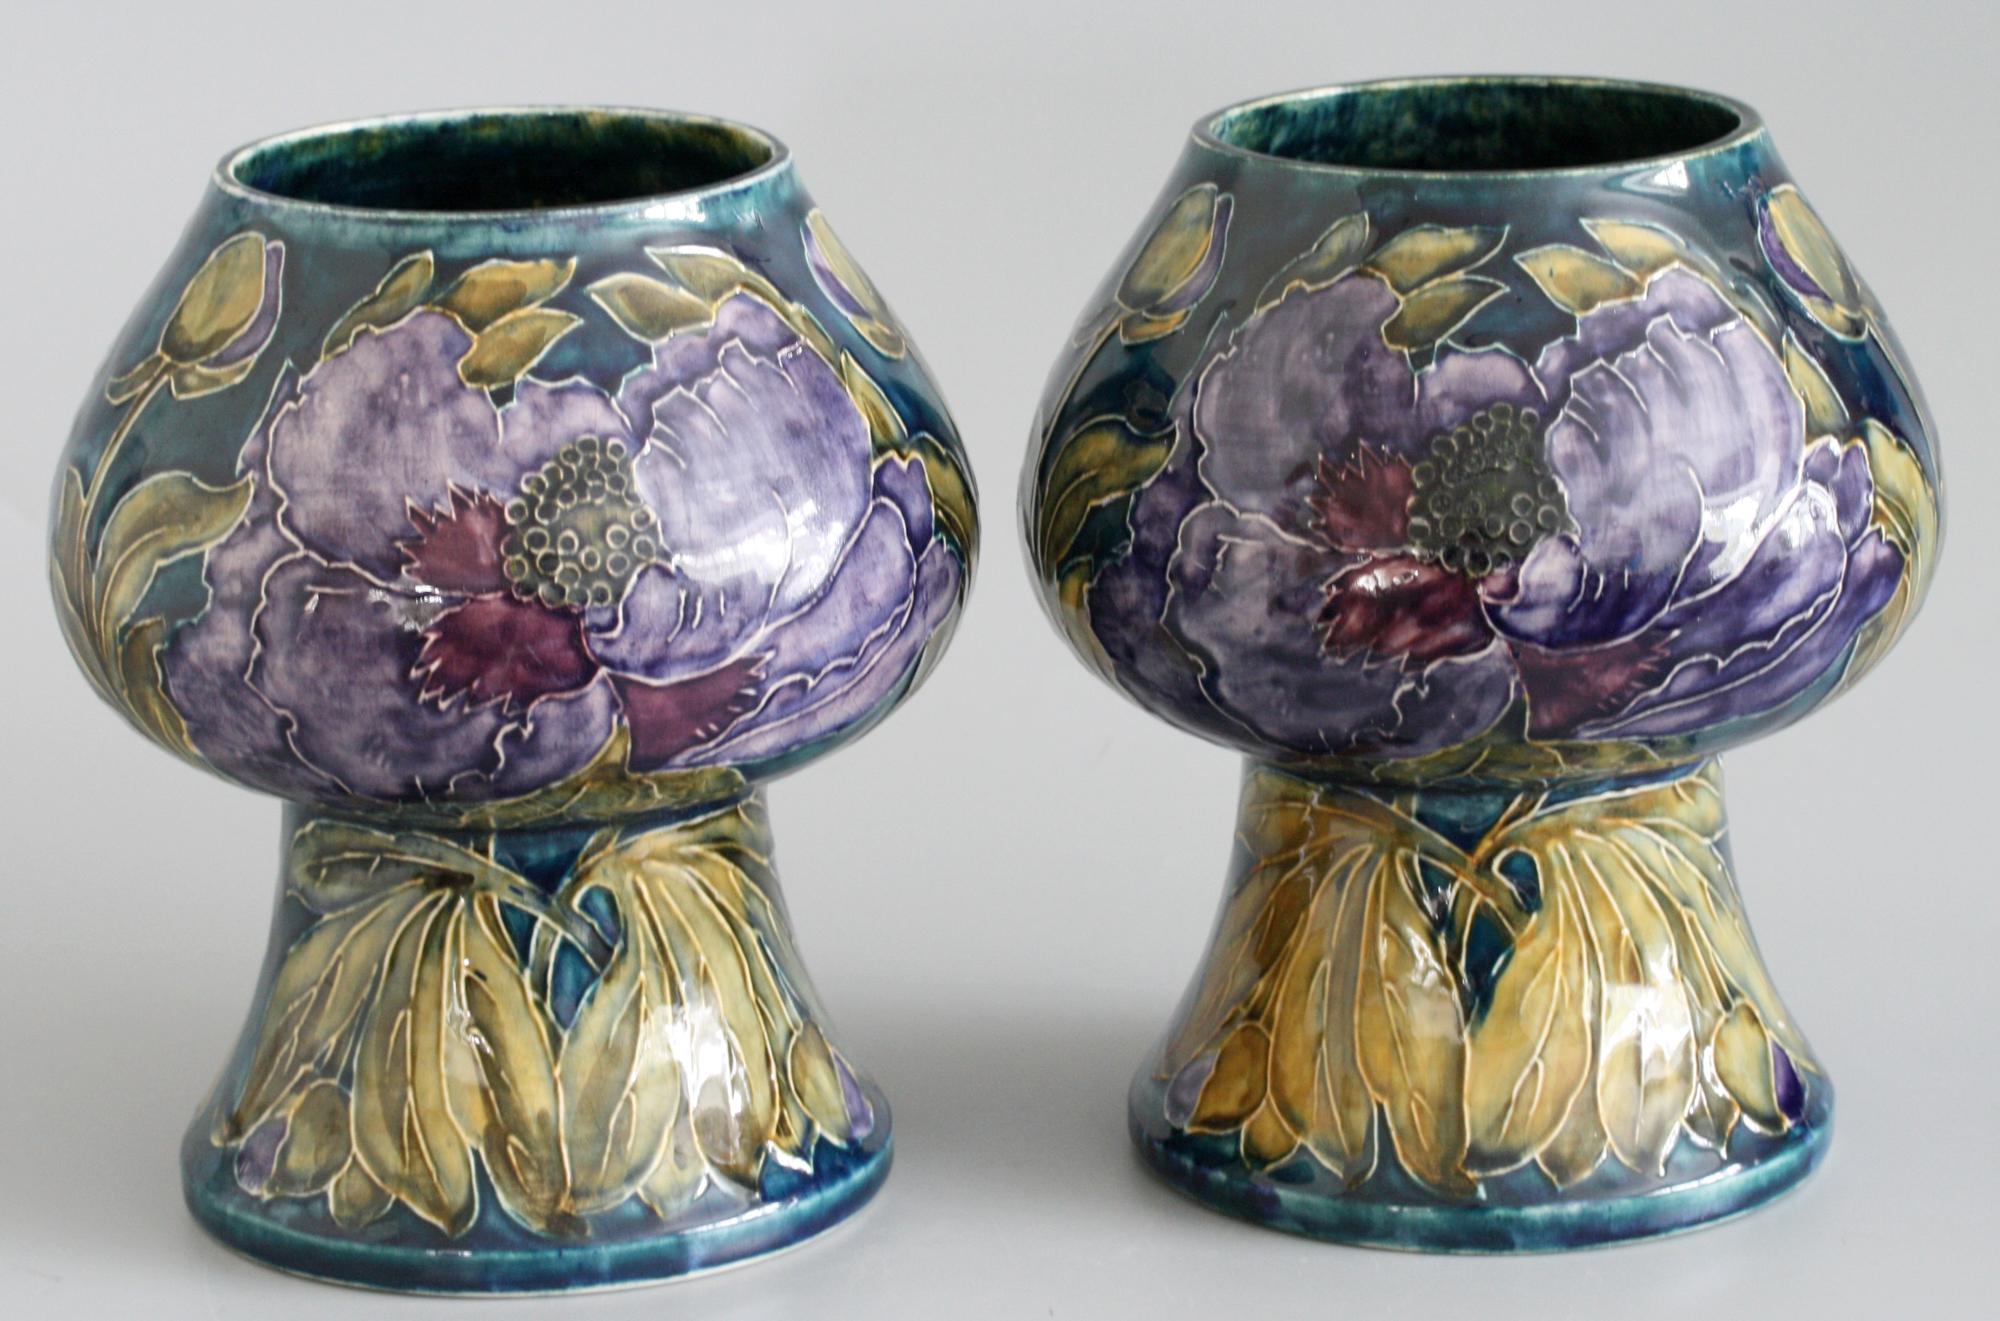 Ein atemberaubendes und seltenes Paar von Art Deco Hancock & Sons Morrisware handbemalte Vasen mit blühenden Mohnblumen von George Cartlidge aus der Zeit zwischen 1918 und 1926. Diese stilvollen knospenförmigen Vasen sind mit abgerundeten